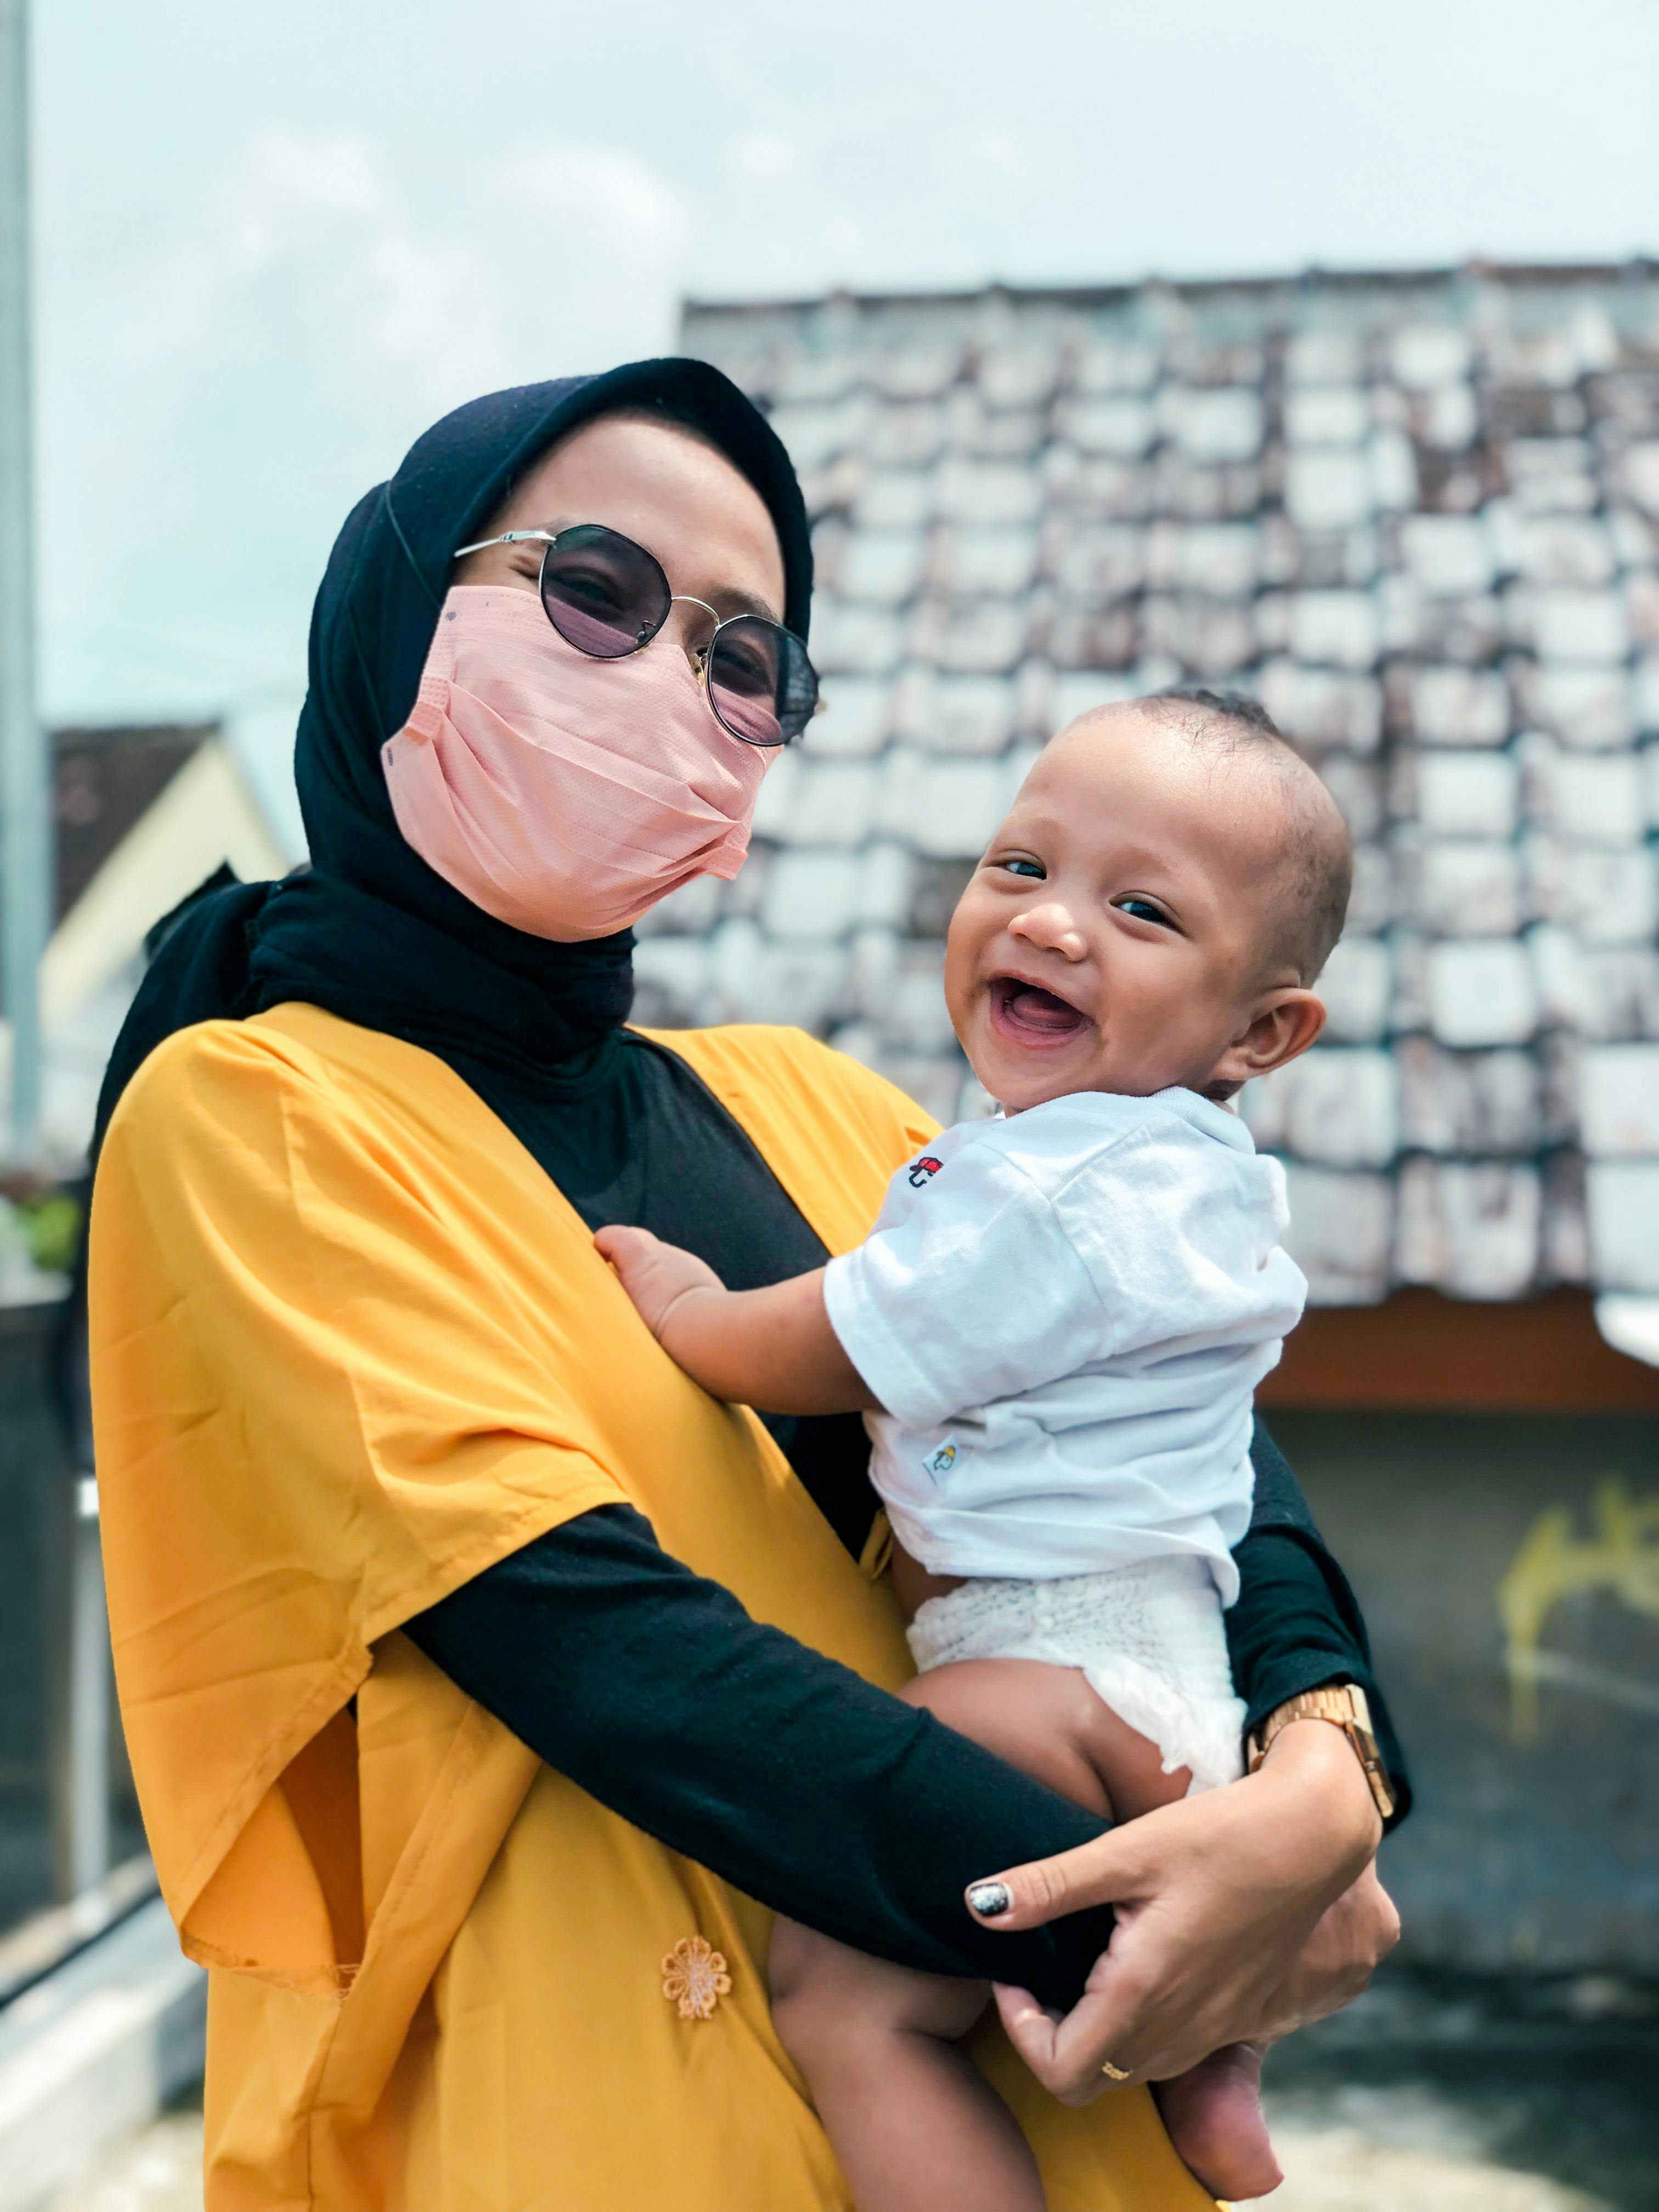 Una mujer con una máscara y un bebé sonriente en brazos | Foto: Pexels